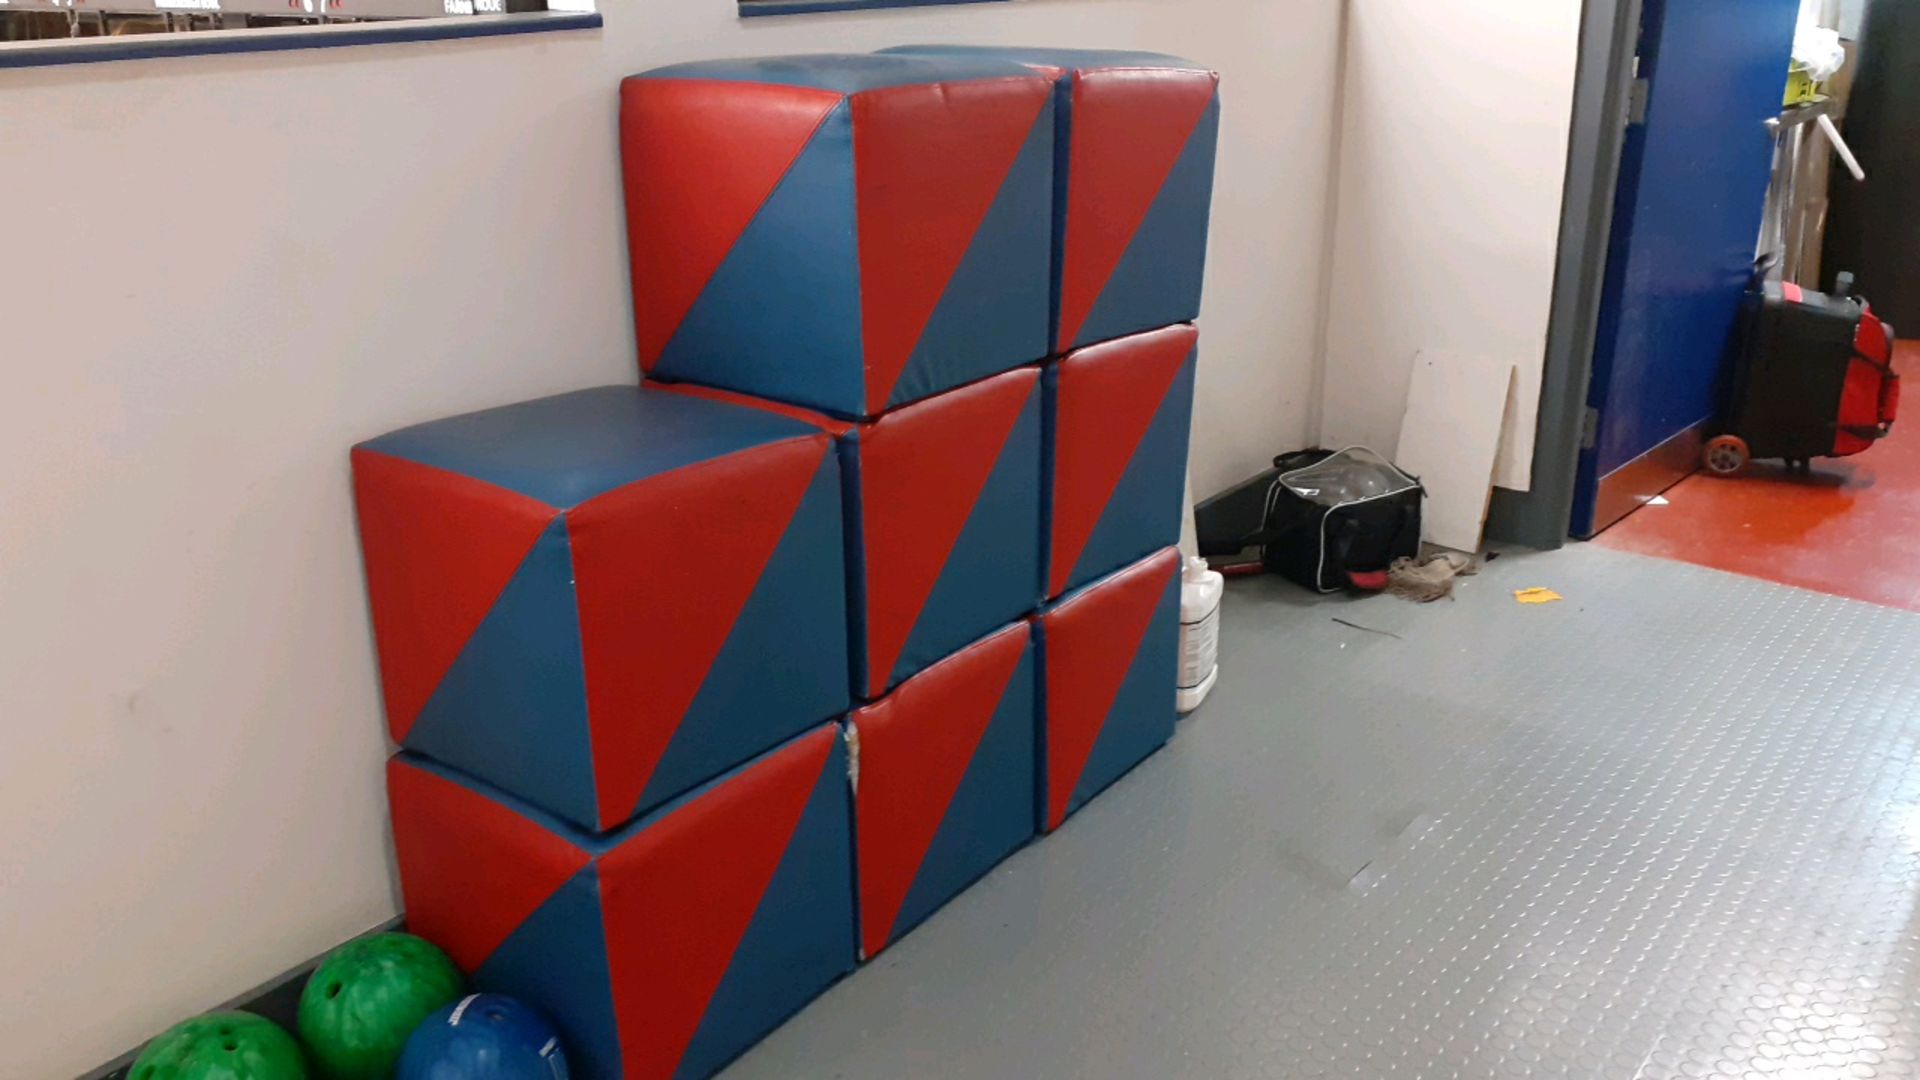 Cube stools